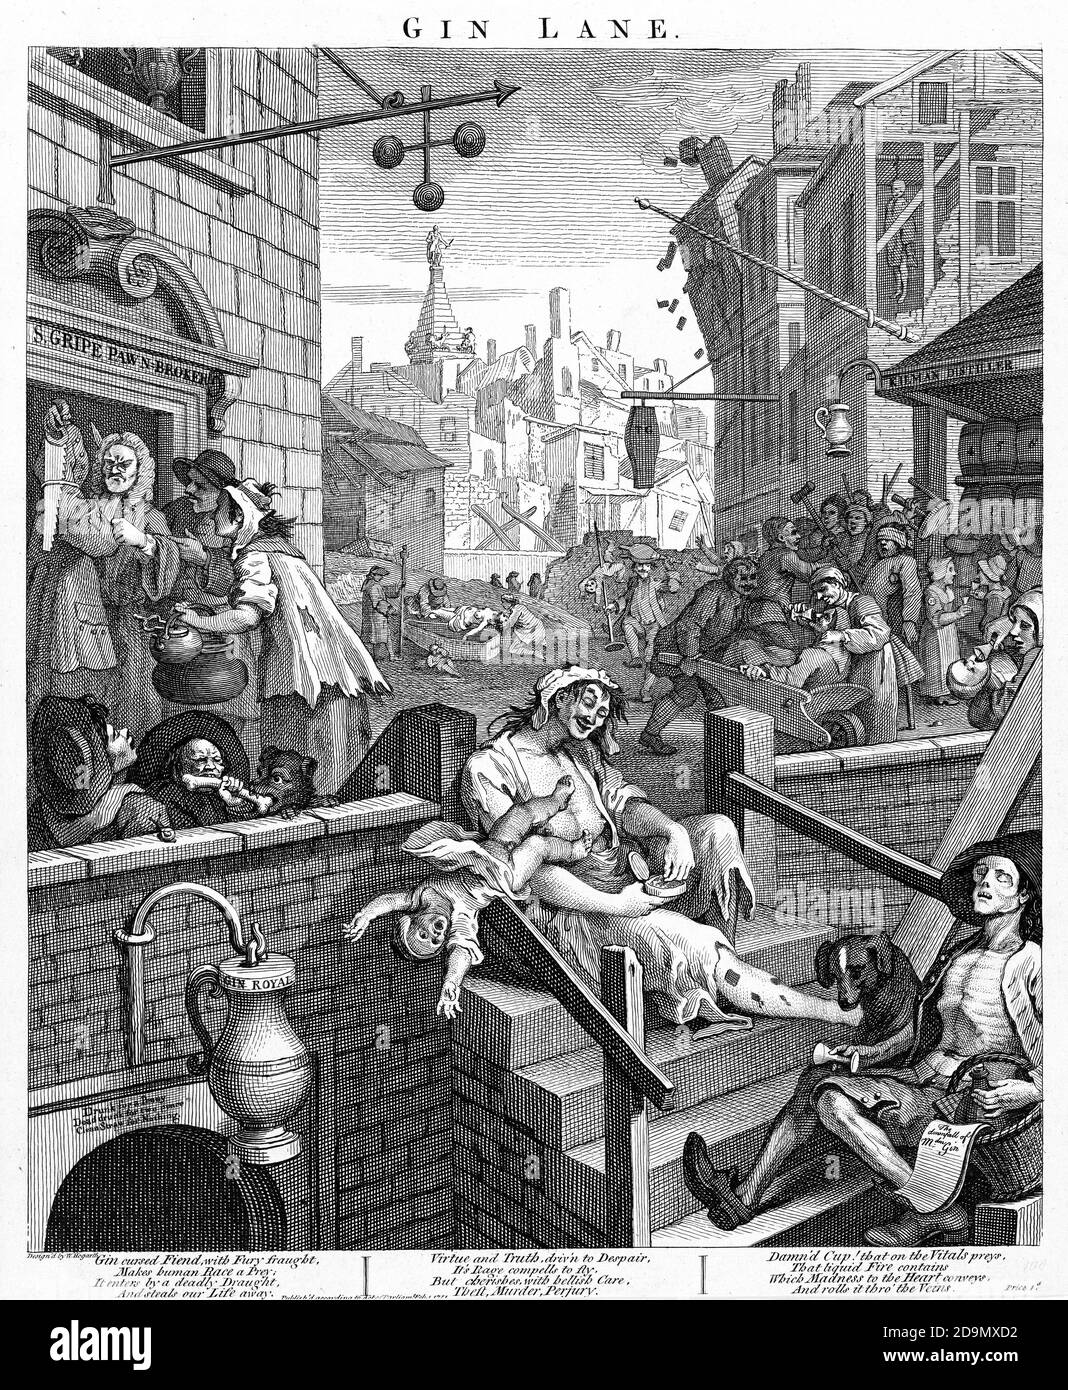 Gin Lane par William Hogarth (1697-1764), gravure et gravure, 1751 Banque D'Images